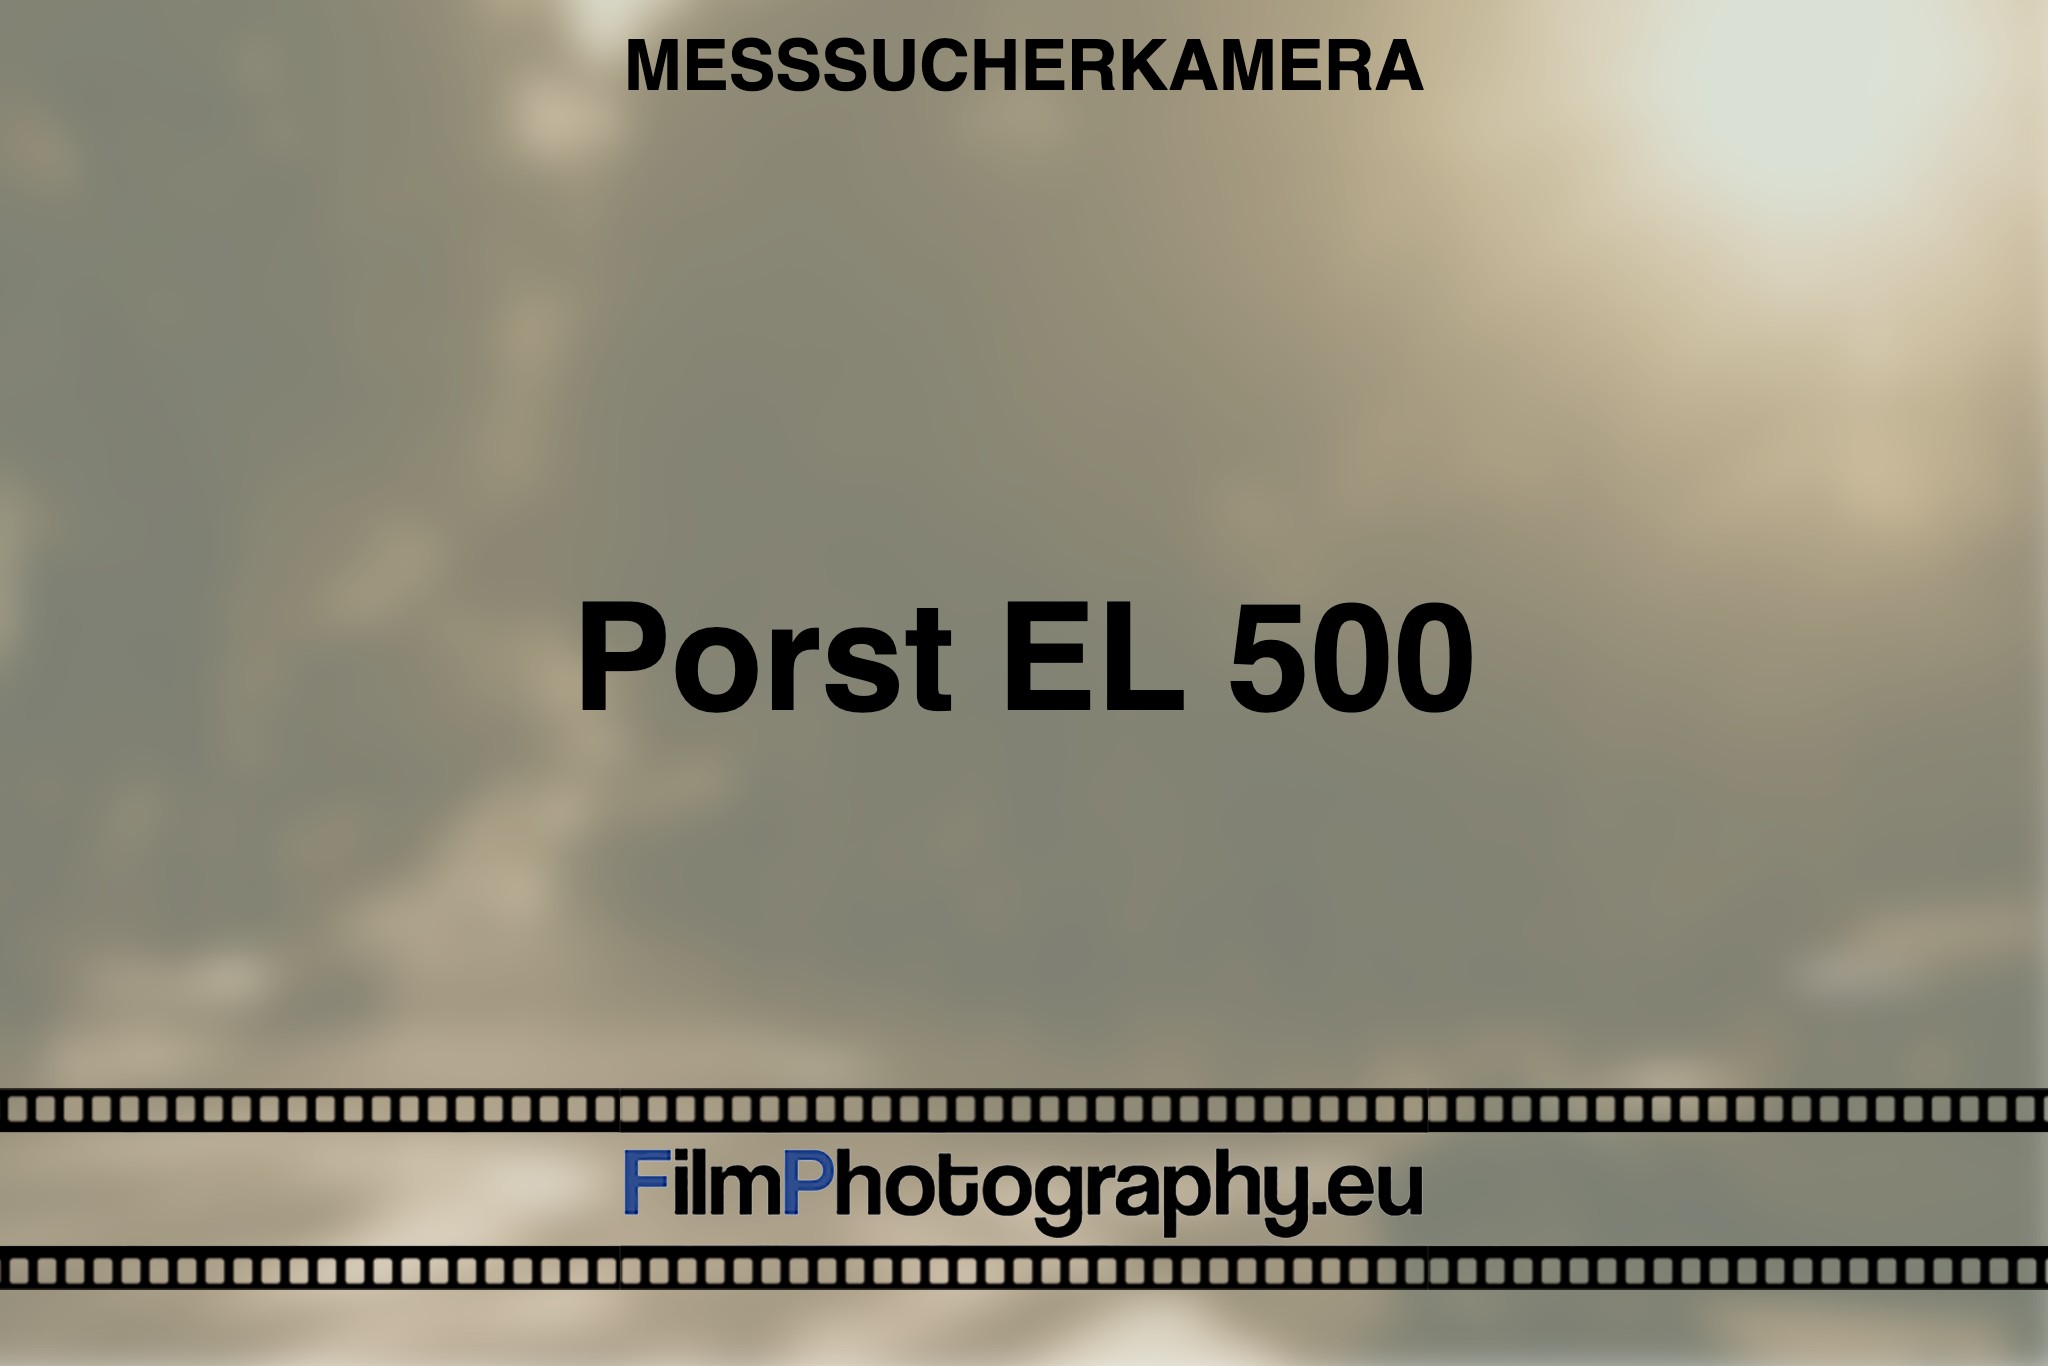 porst-el-500-messsucherkamera-bnv